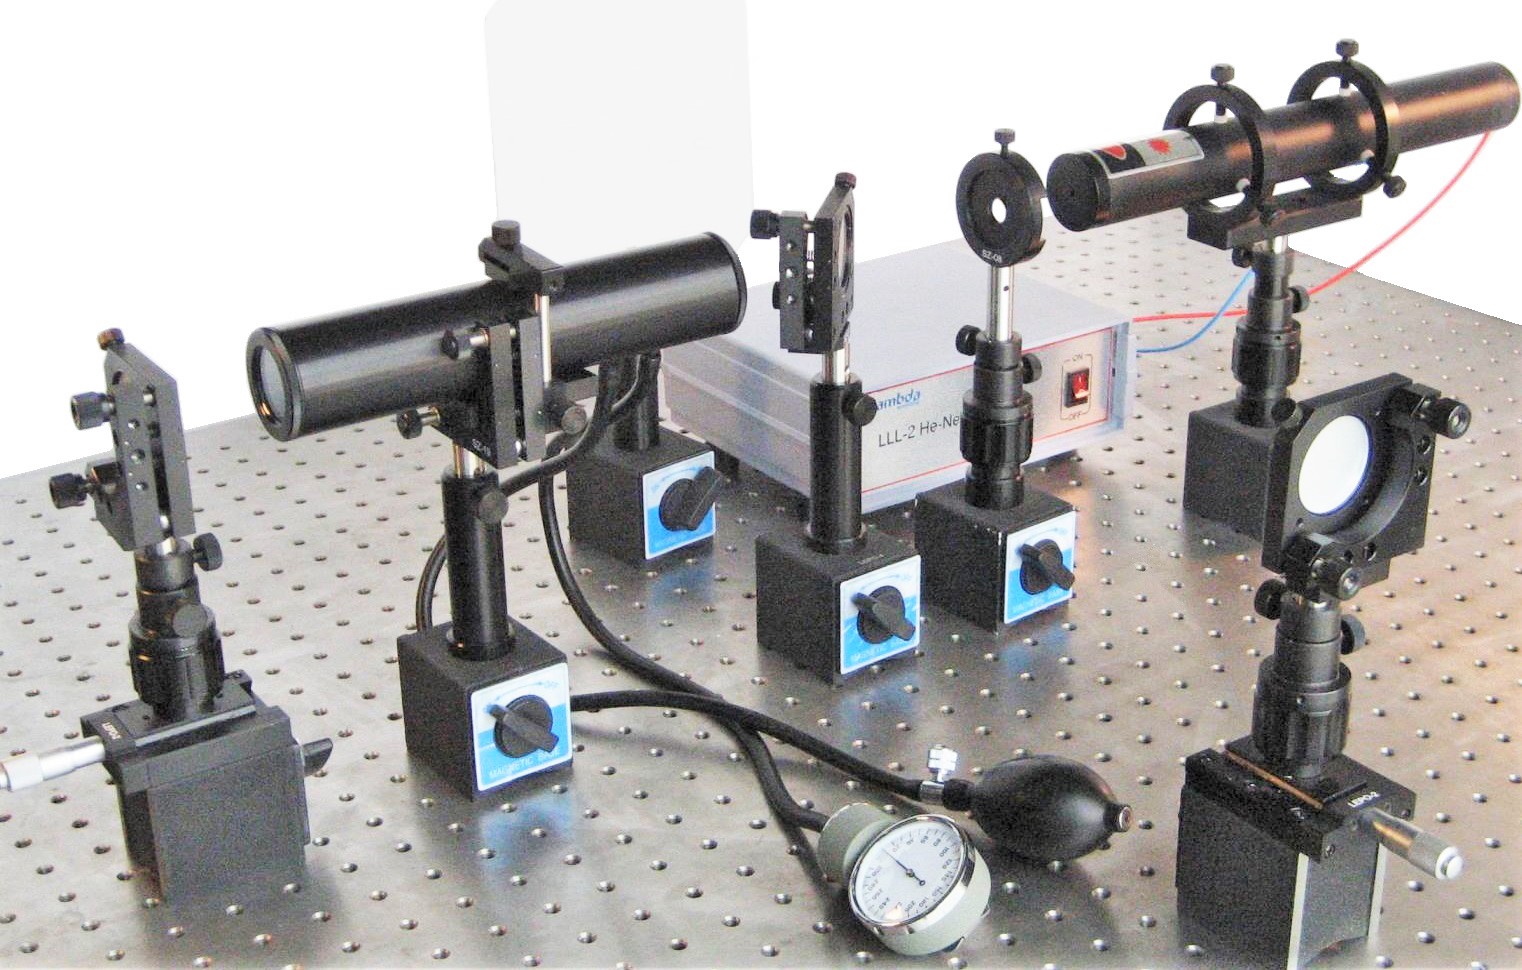 LEOK-3A Optics Experiment Kit - Advanced Model